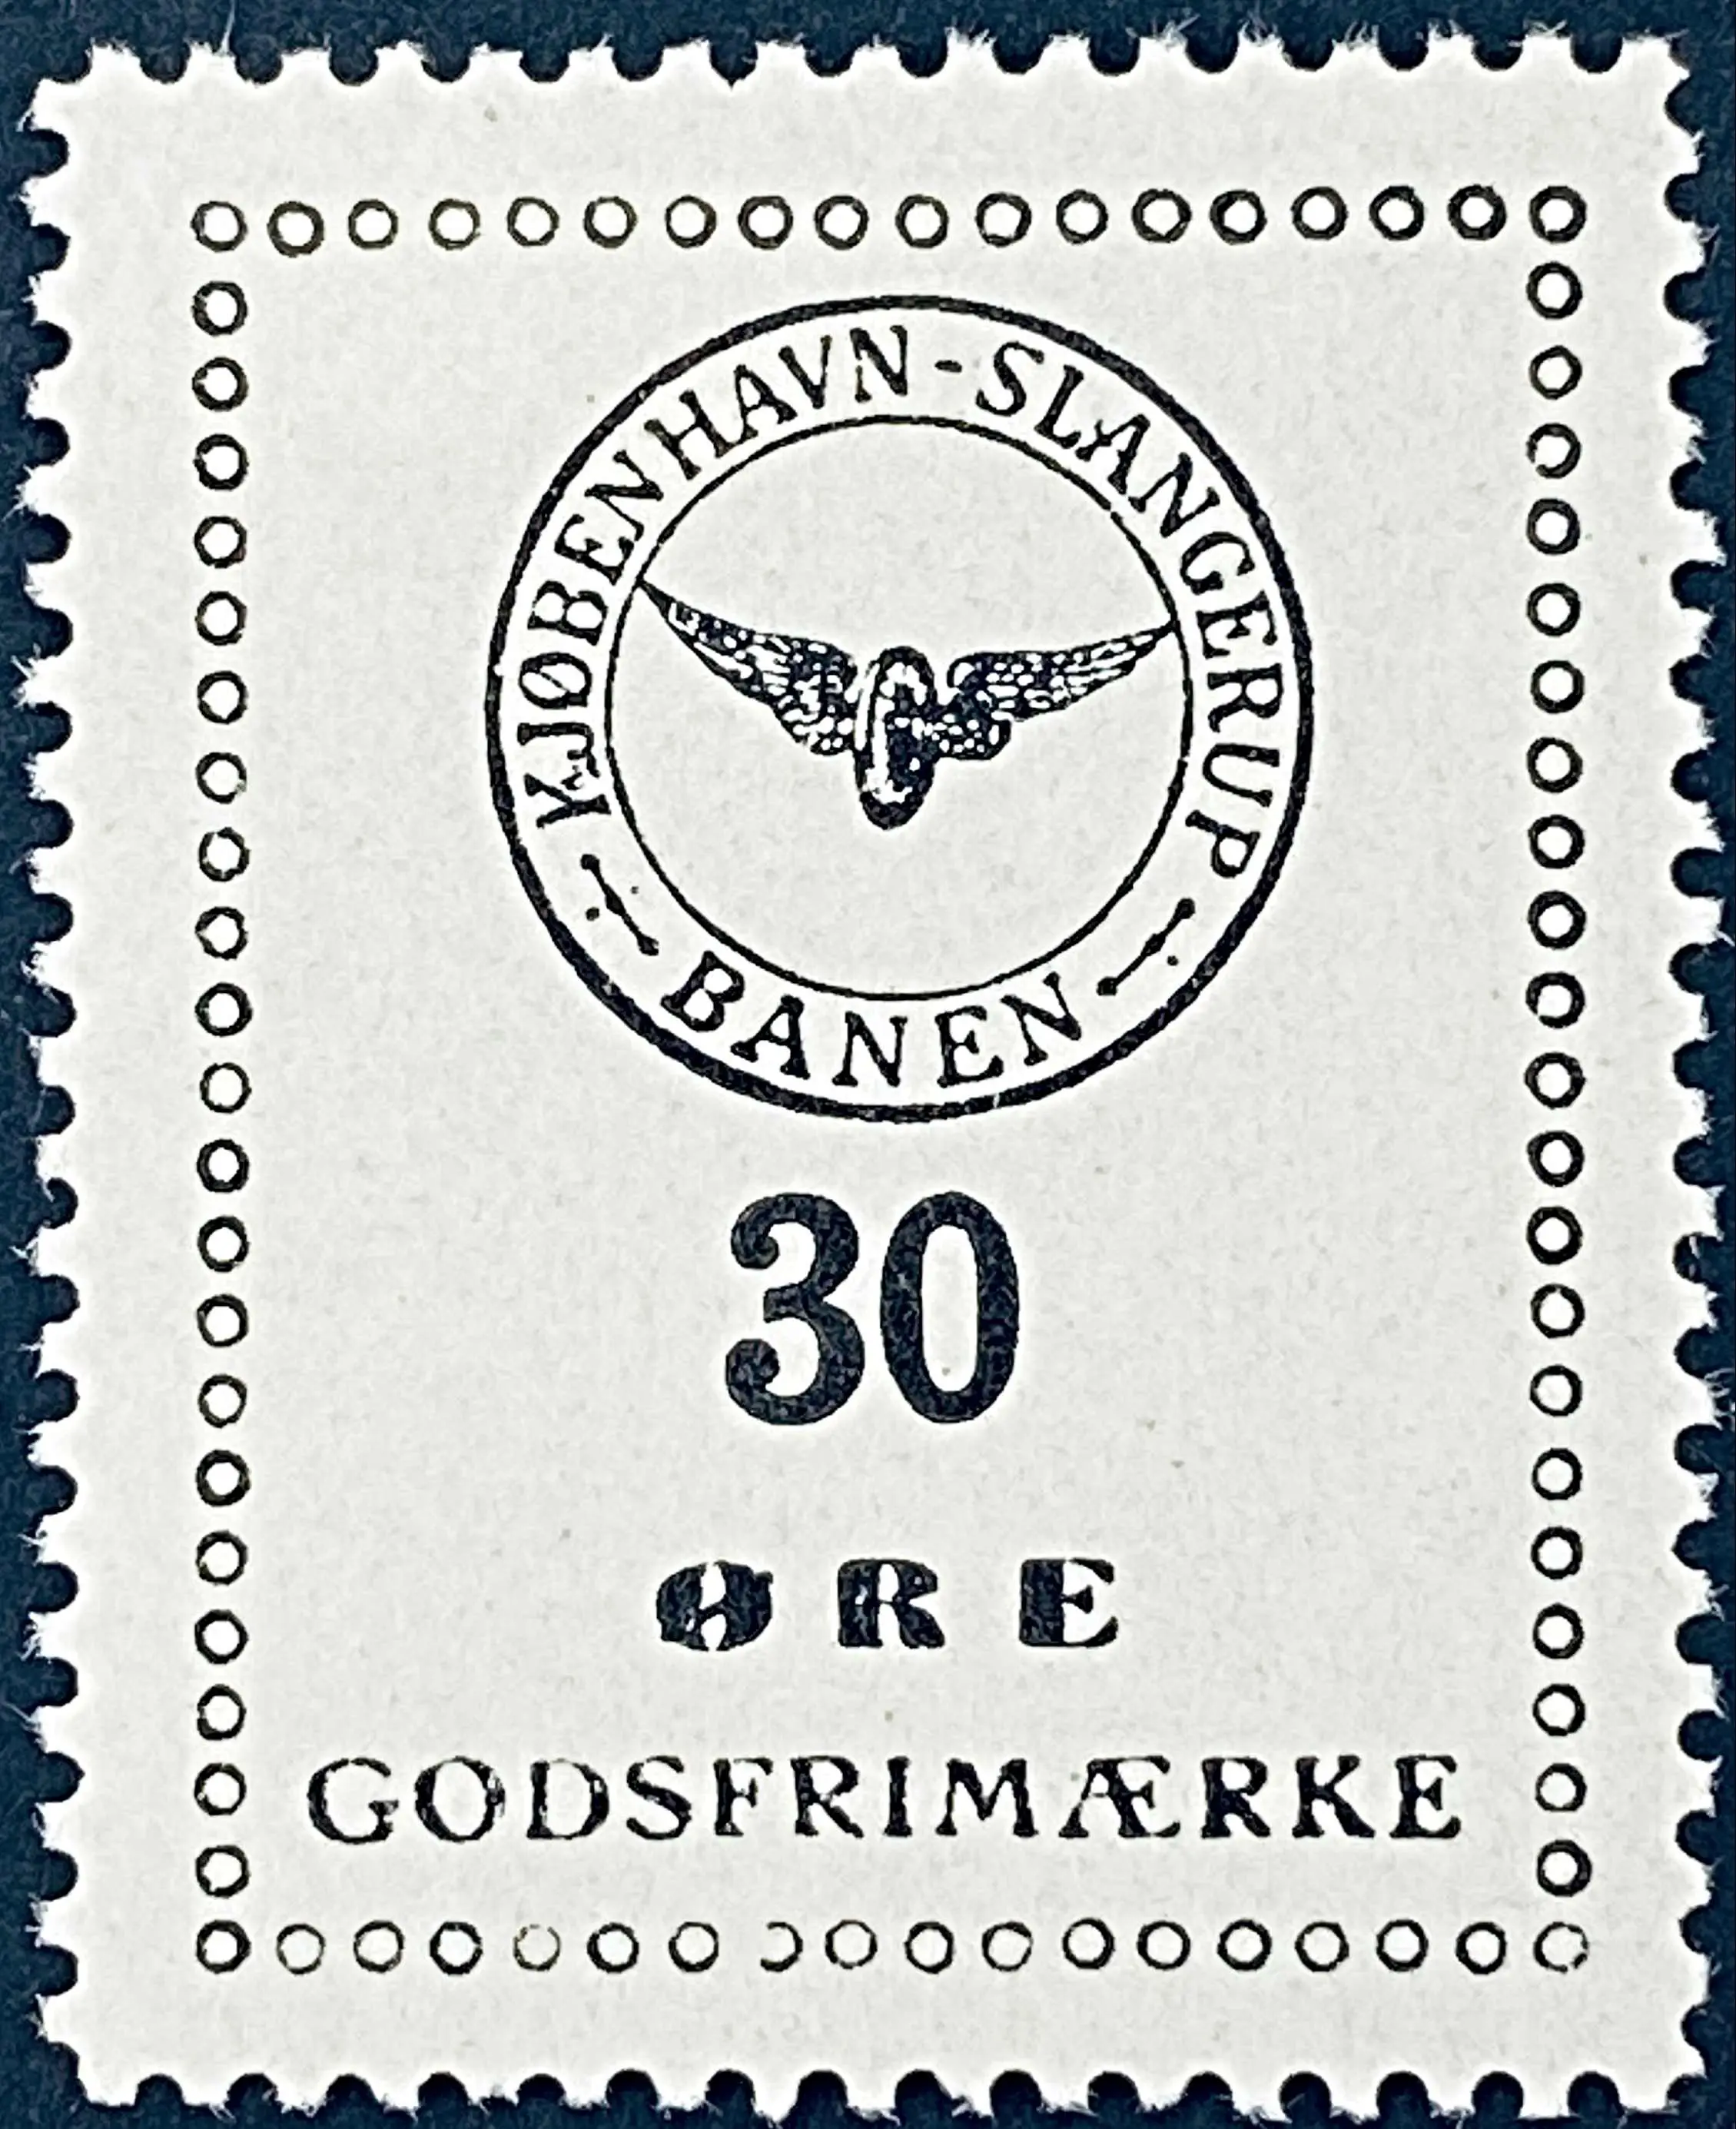 KSB 27 - 30 Øre - Sort tekst på hvidt papir.